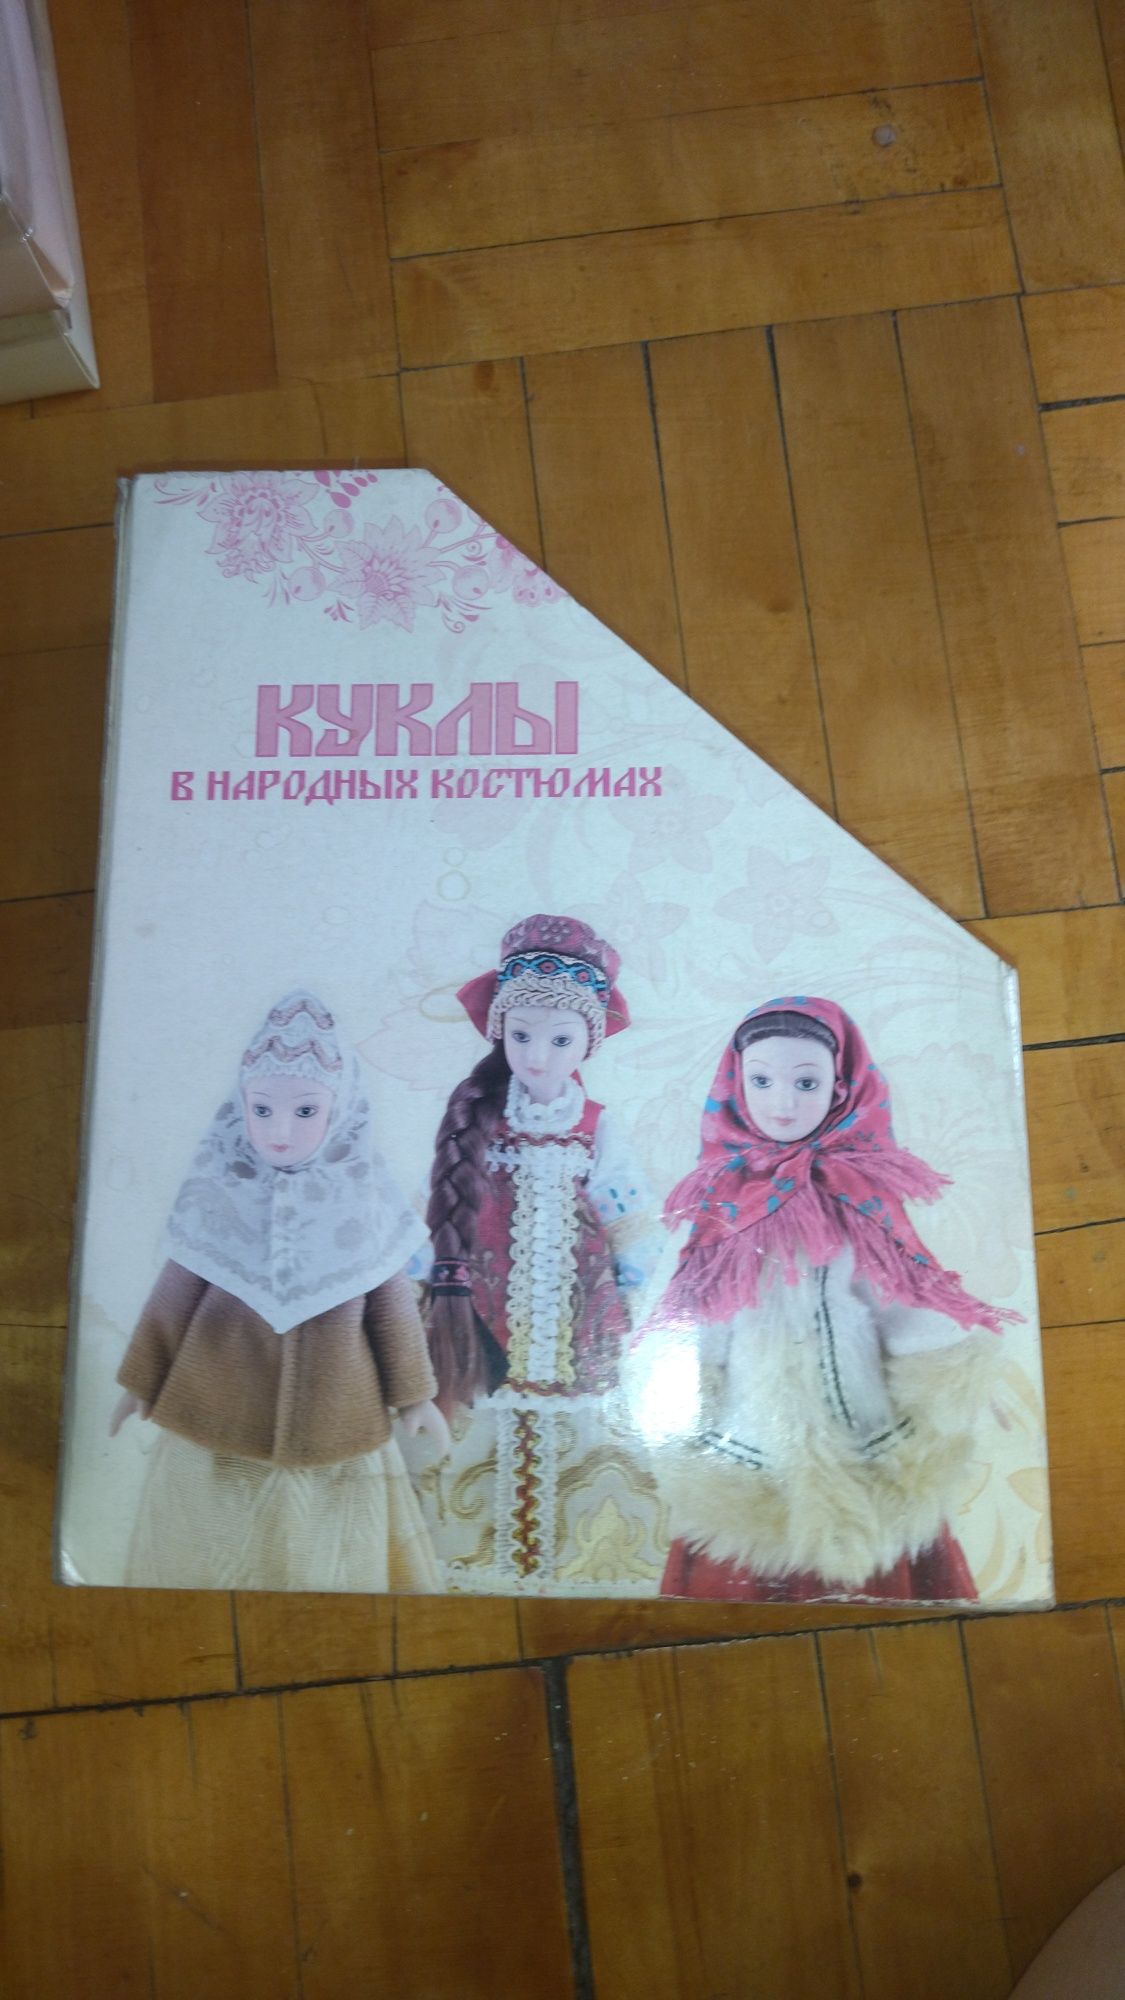 Фарфоровые куклы в народных костюмах с журналами